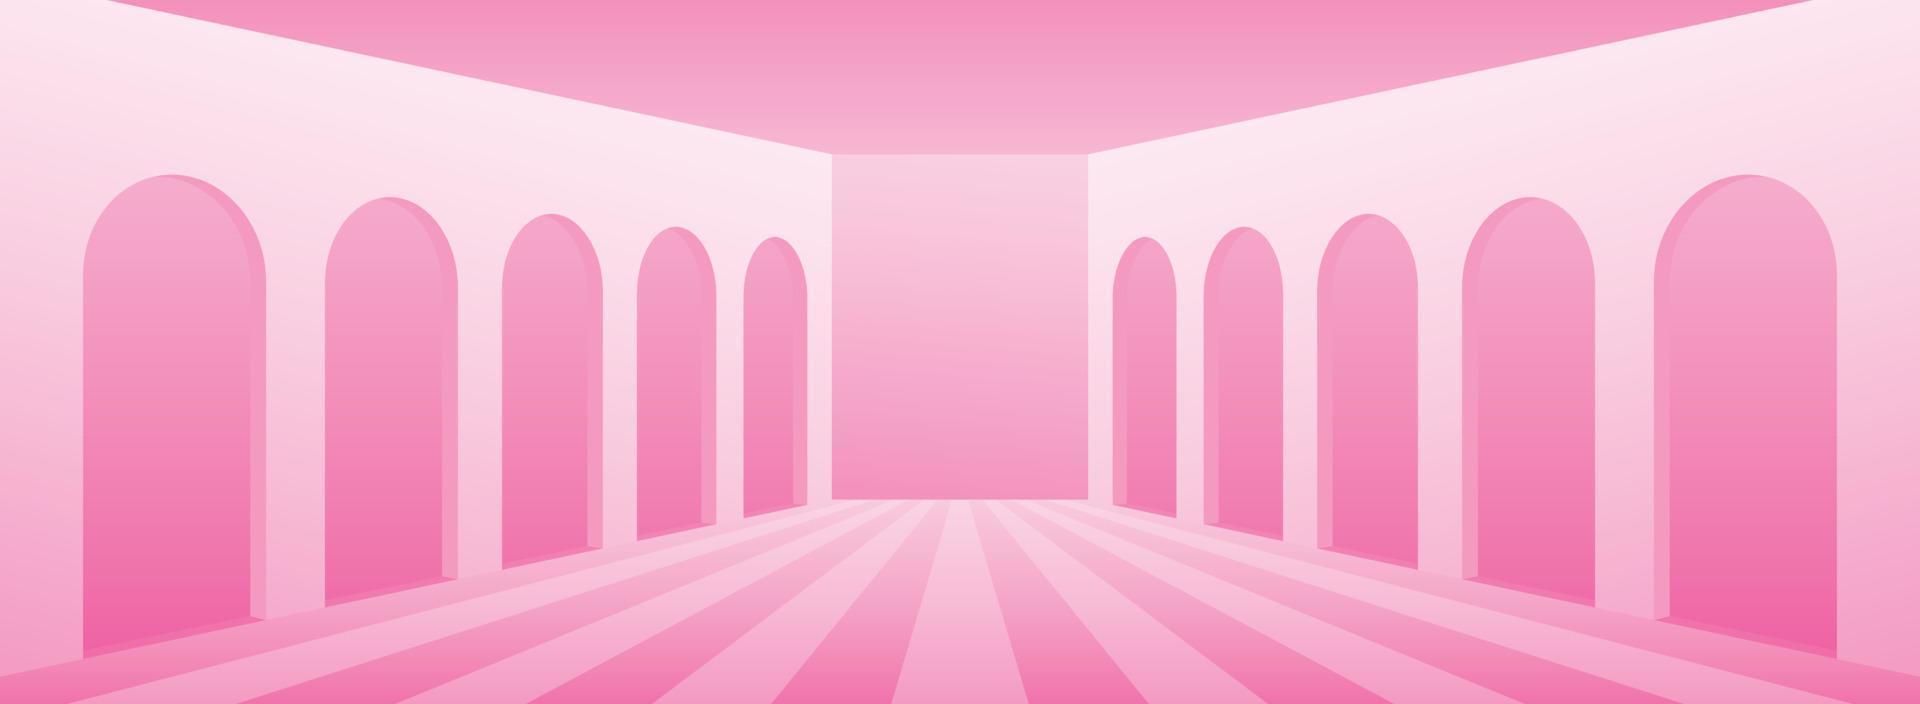 cena de fundo de corredor largo rosa pastel doce vetor de ilustração 3d